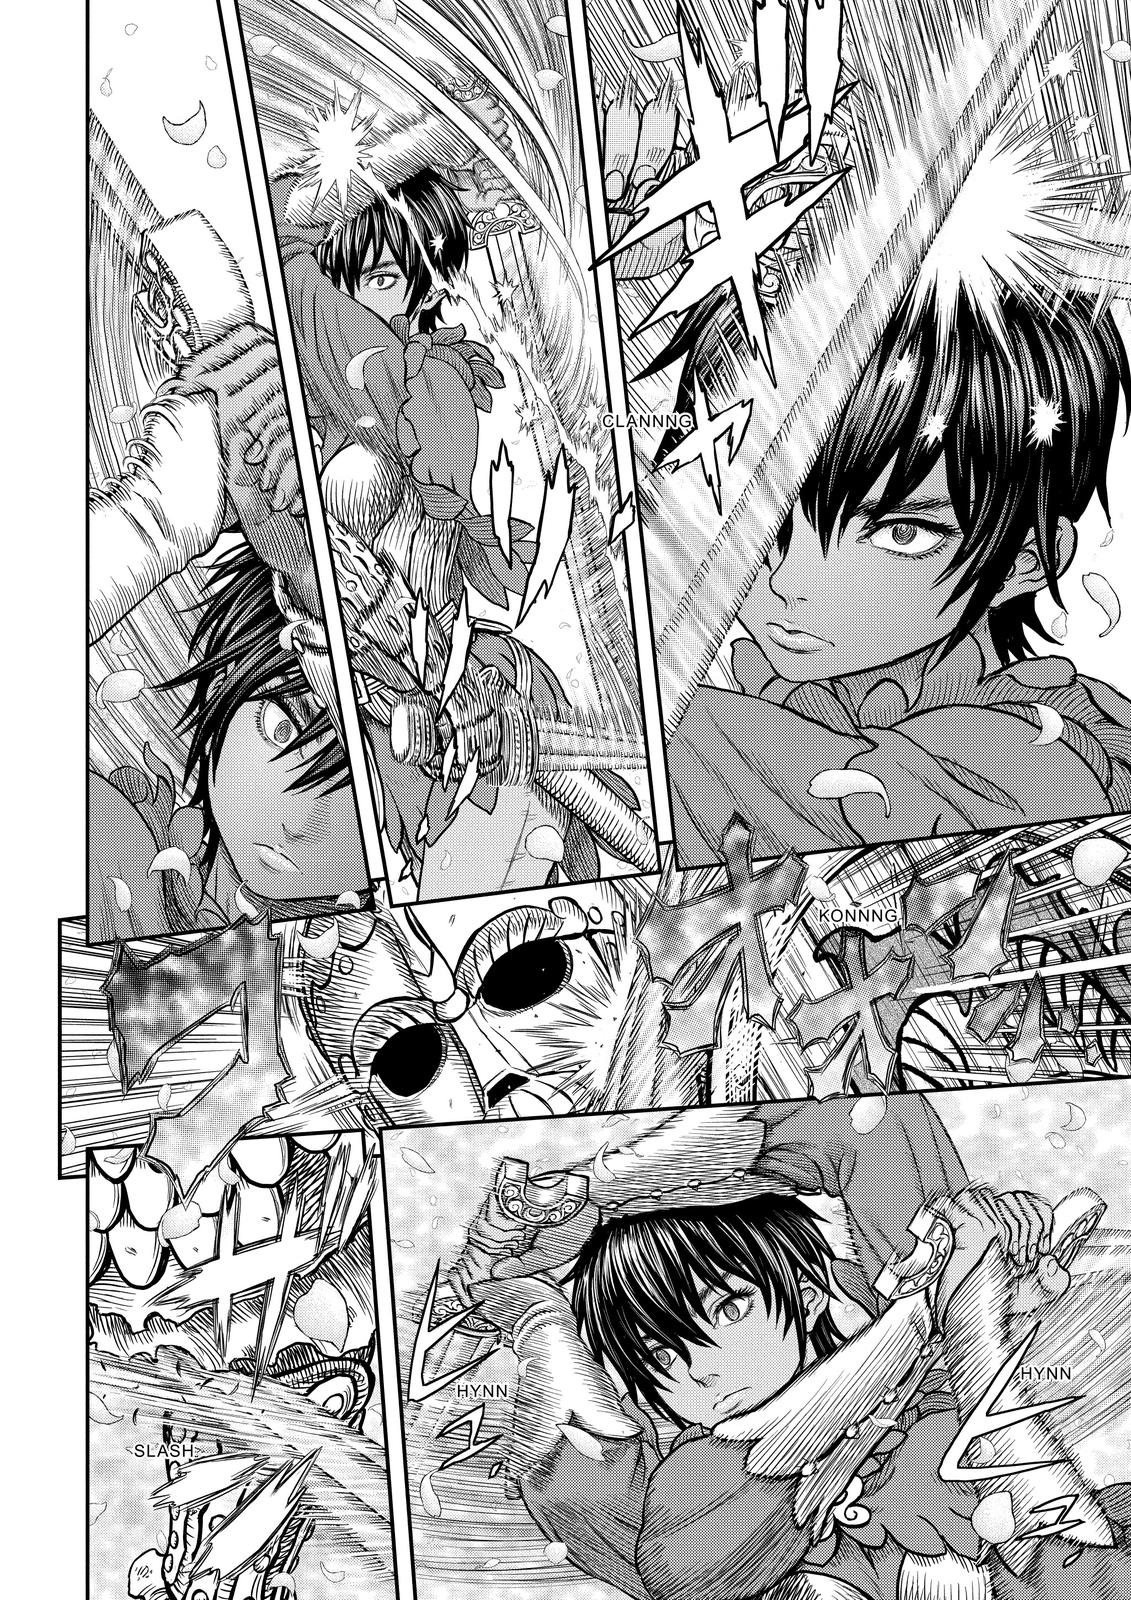 Berserk Manga Chapter 359 image 08